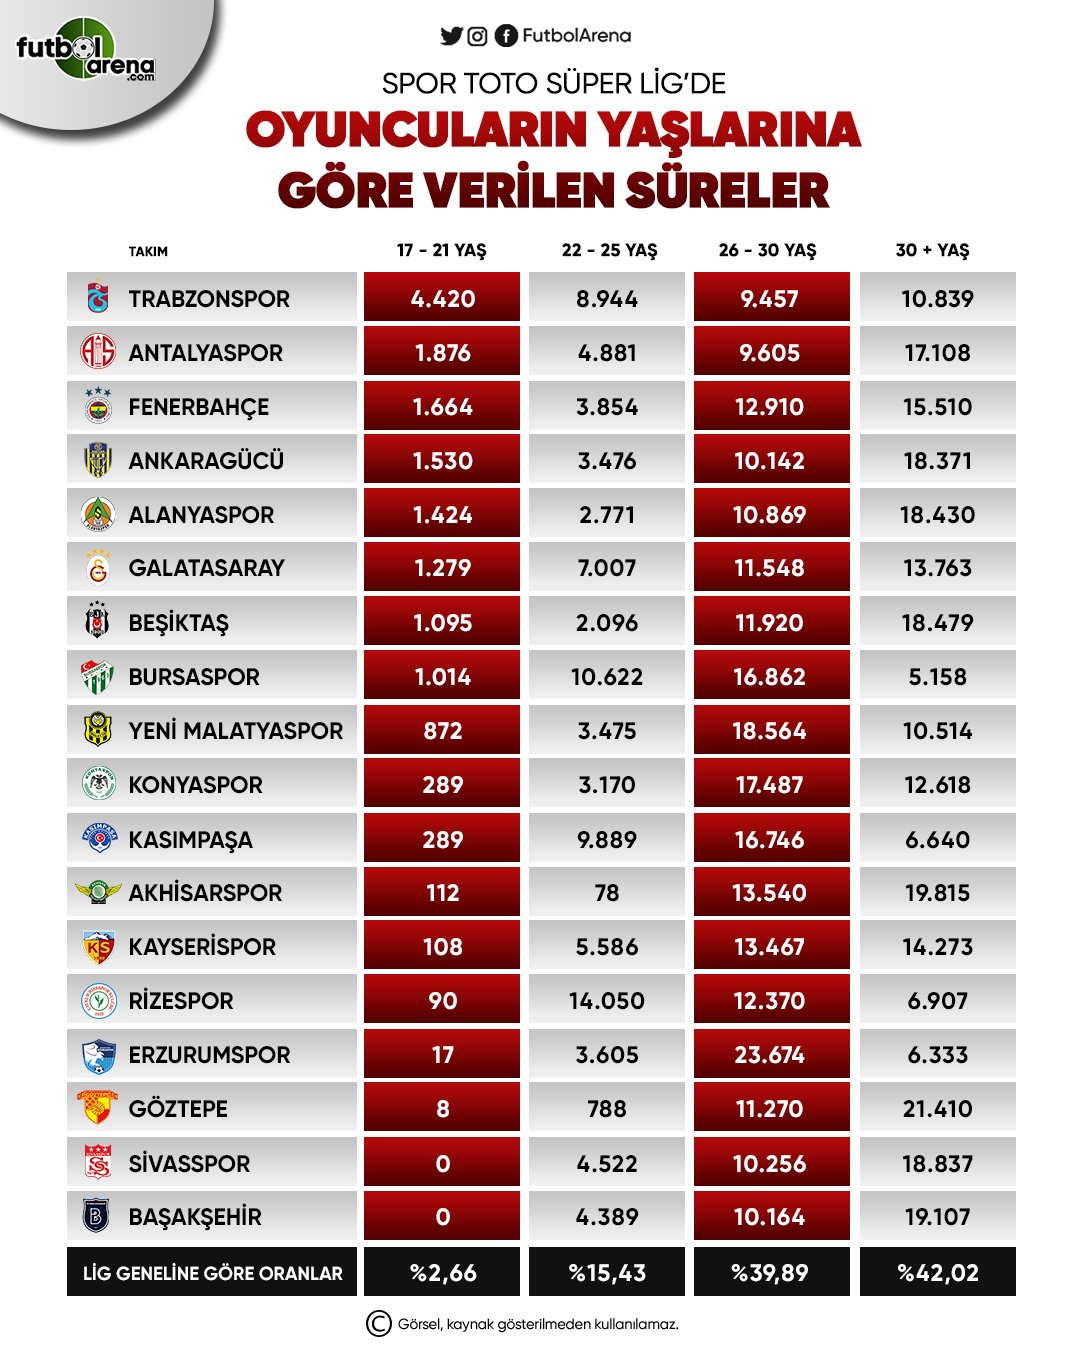 <h2>Süper Lig’de yaşlarına göre futbolculara verilen süreler</h2>